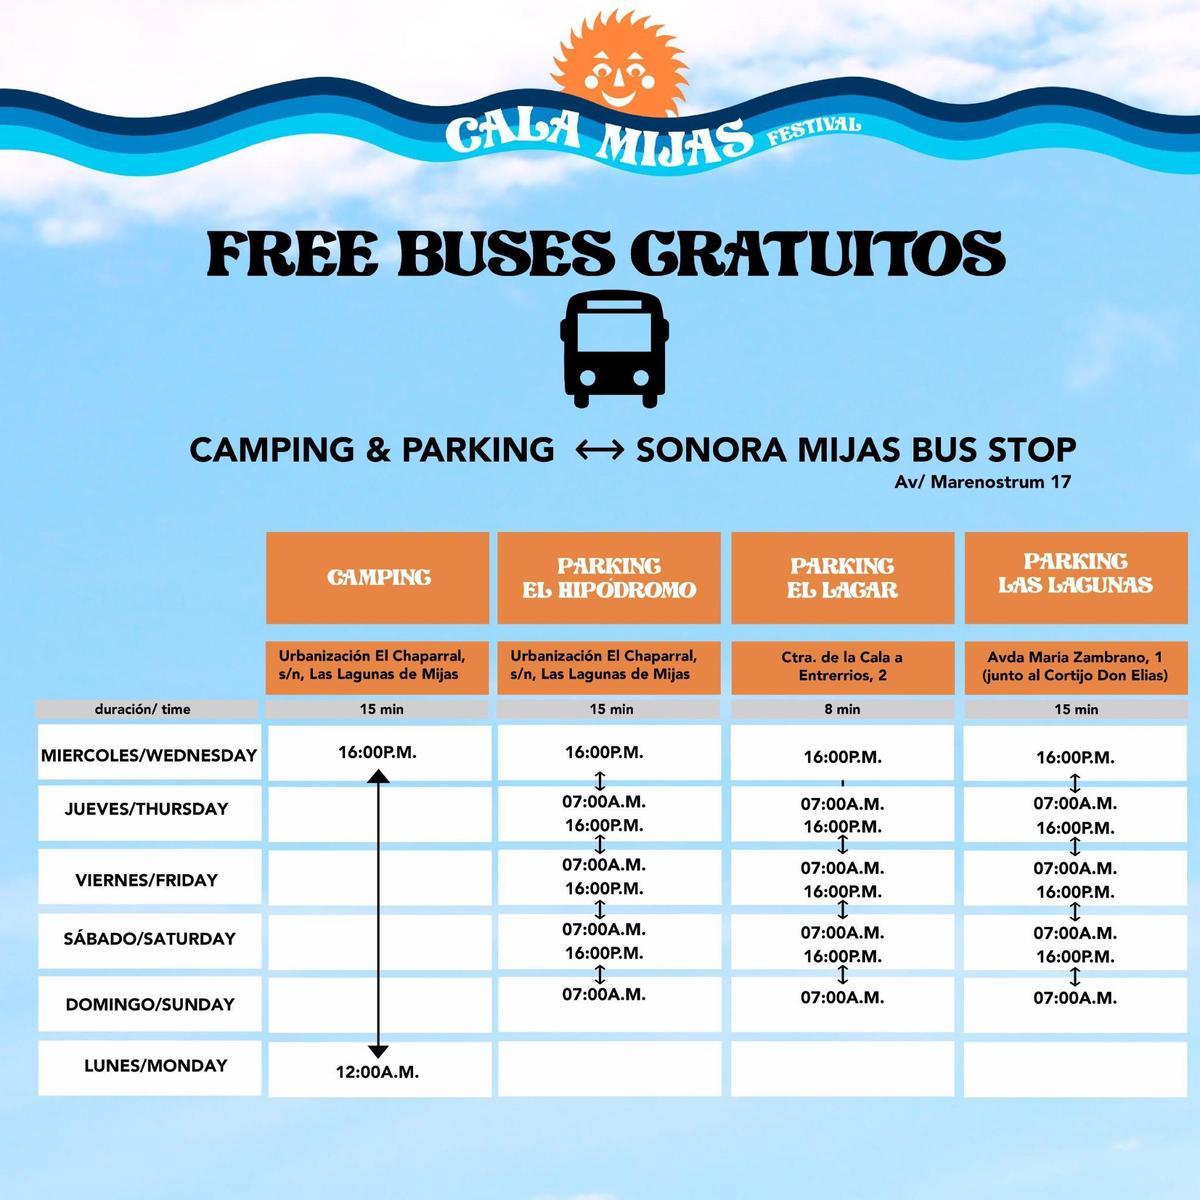 Habrá autobuses gratuitos para acudir al recinto Sonora Mijas